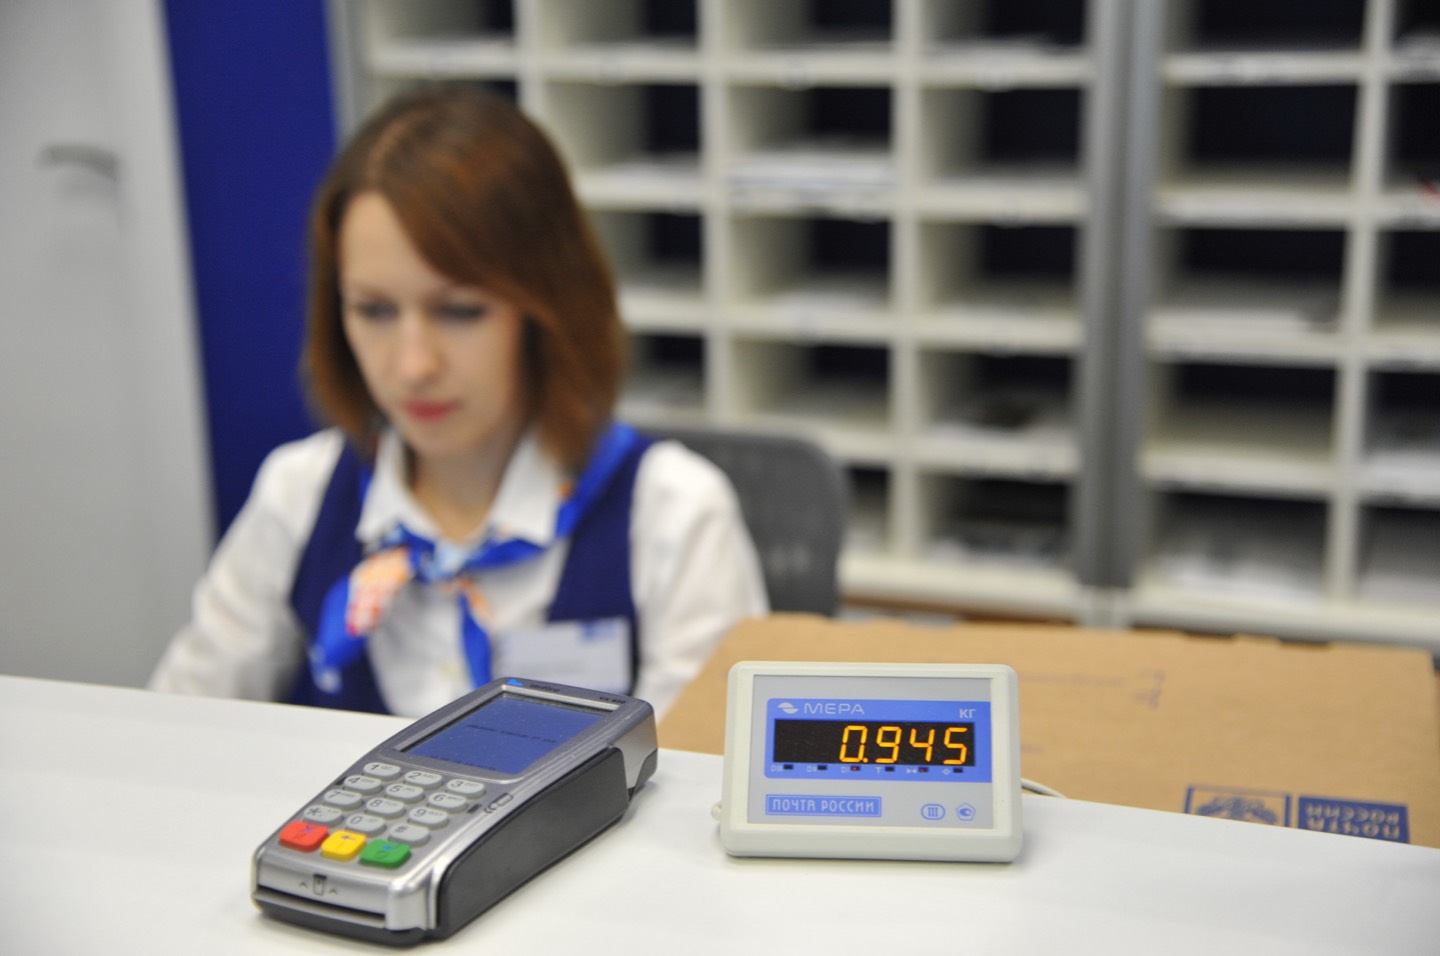 Наложенным платежом при получении на Почте России | Интернет-магазин lavandasport.ru